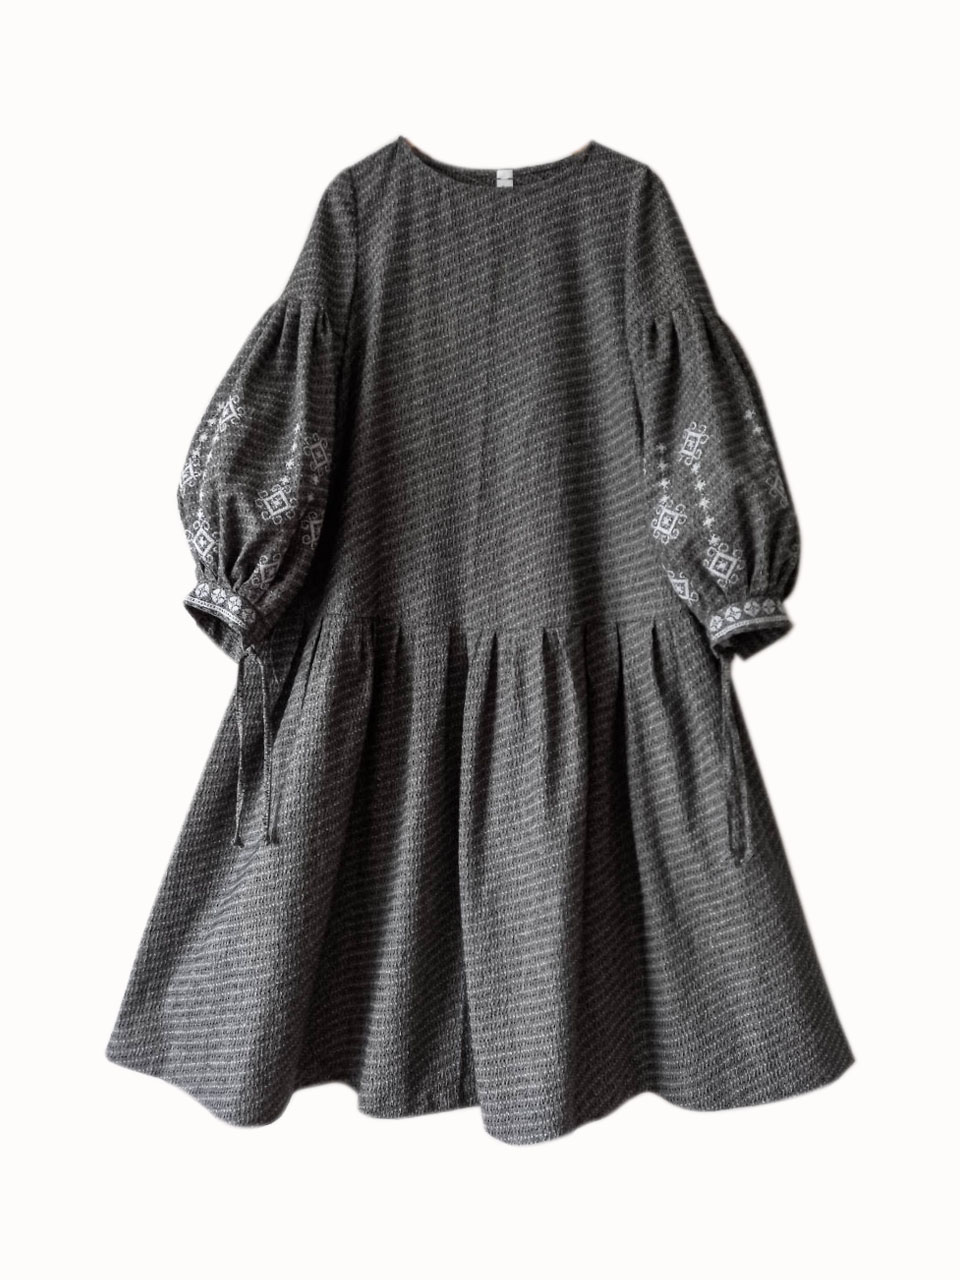 Руна. Платье трапеция с пышной юбкой вышивкой в этностиле PL-42-2345. LinenBy